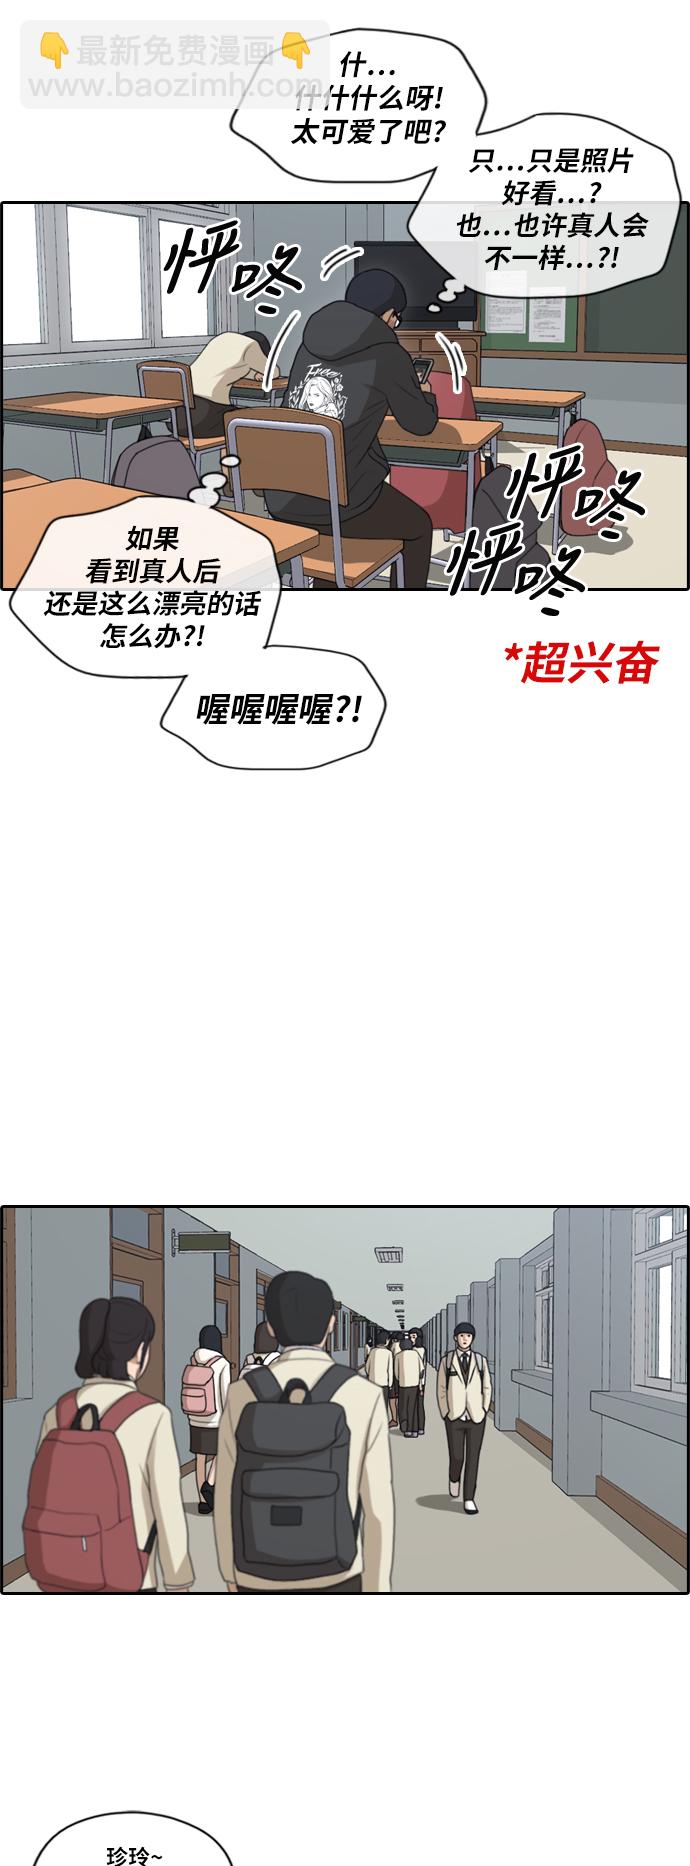 青春白卷 - [第167话] 高校漫画征集大赛 - 2